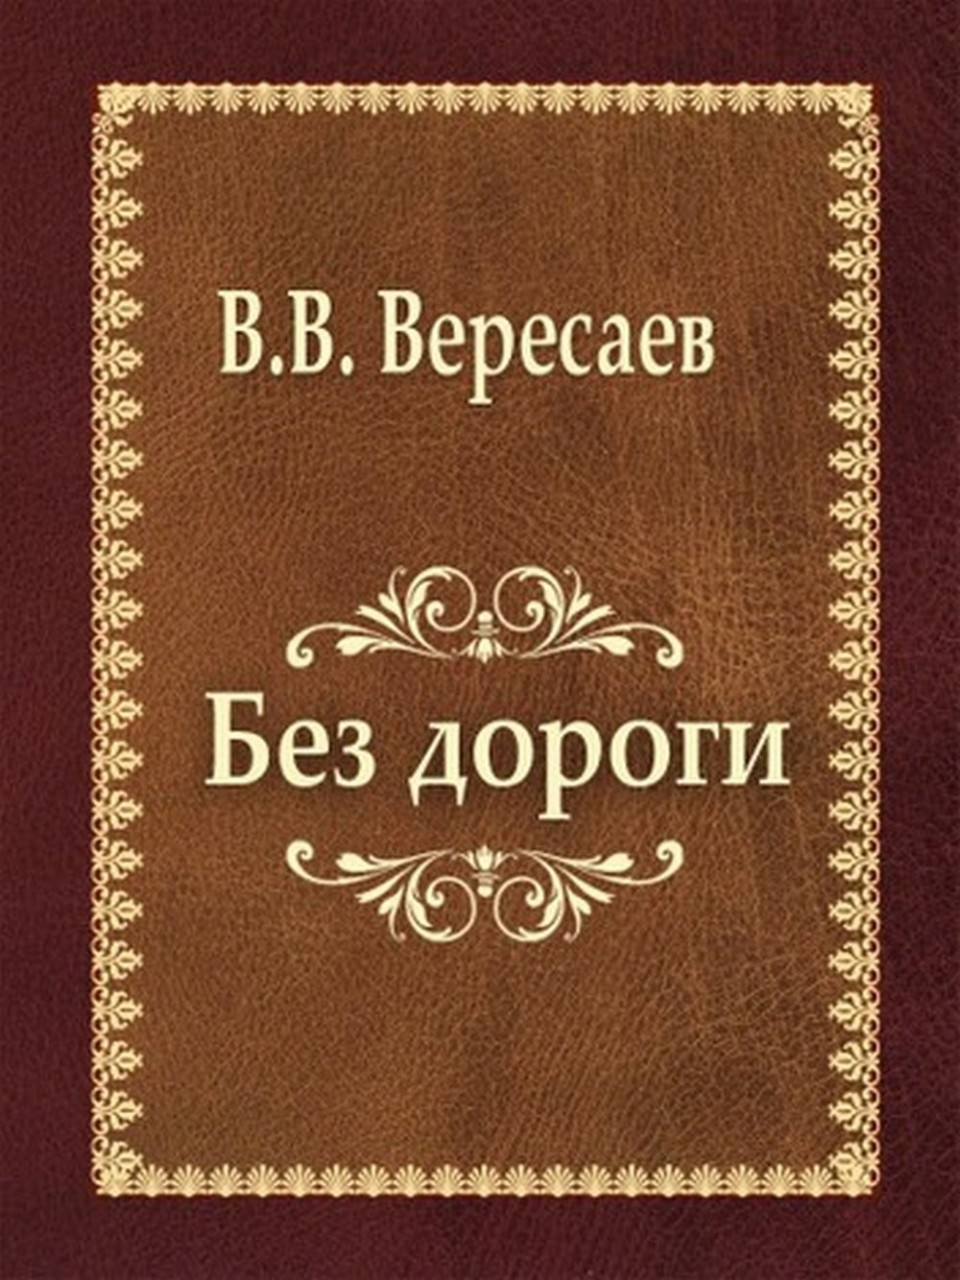 Обложка книги В.В. Вересаева, где рассказано о судьбе доктора Молчанова.